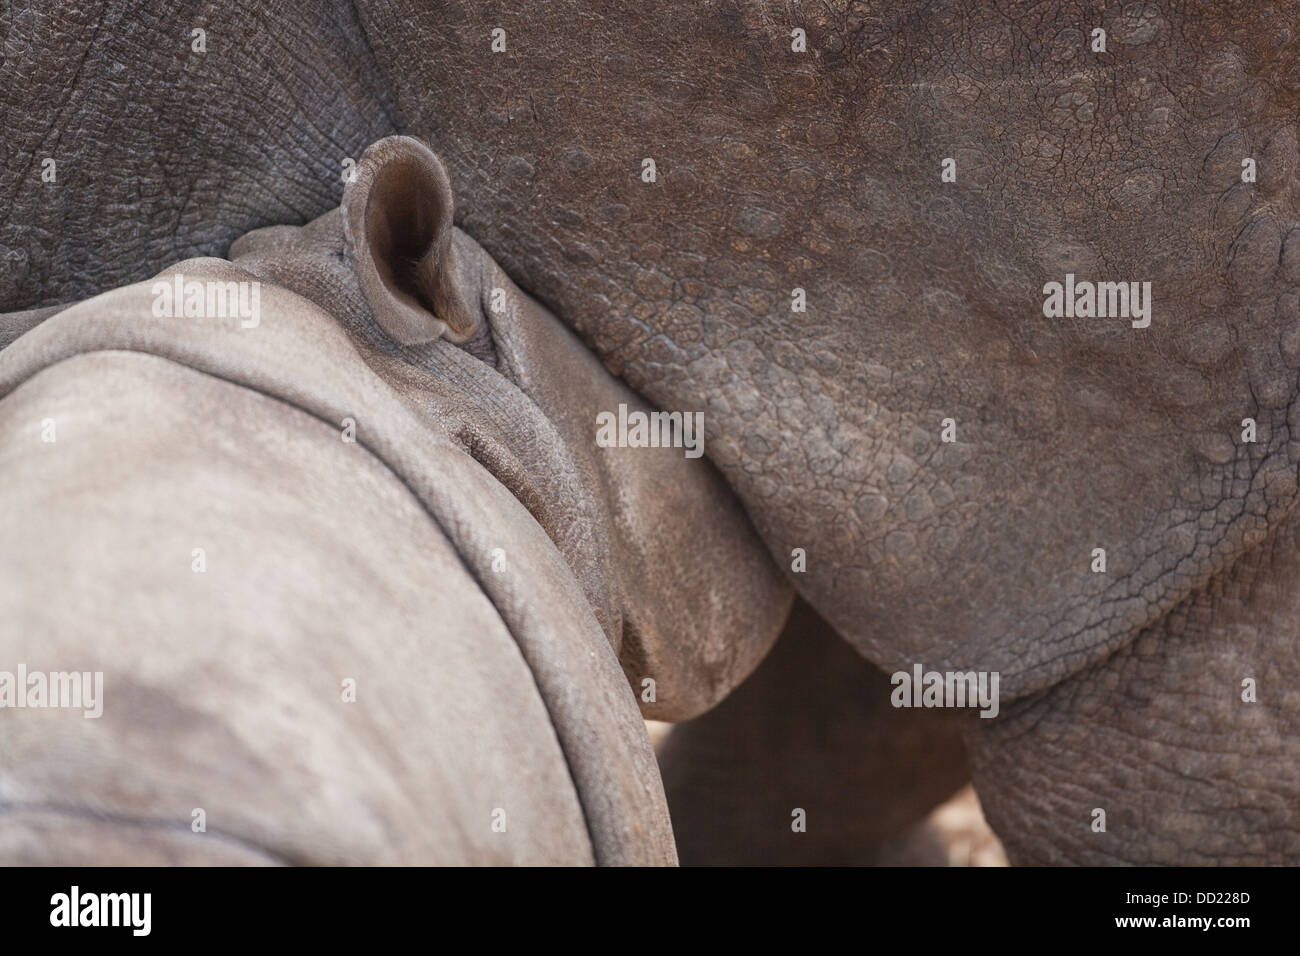 Les Indiens asiatiques ou rhinocéros à une corne ( Rhinoceros unicornis). Veau de lait ou les jeunes de la mère. Banque D'Images